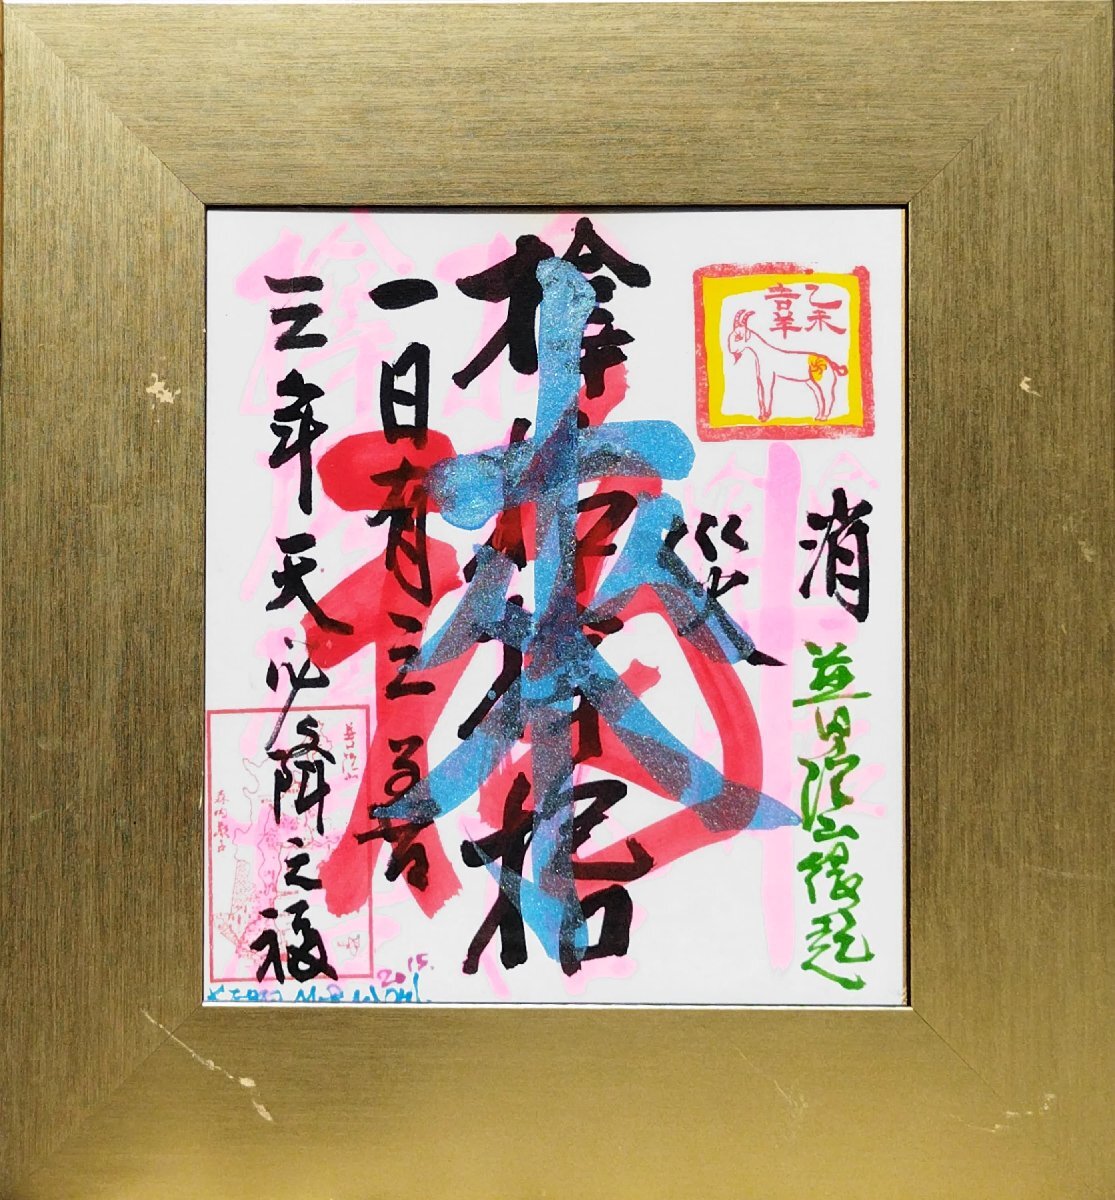 عمل وسائط مختلطة أصلي مضمون من Keiko Moriuchi على ورق ملون موقع ومؤطر من قبل جمعية Gutai Art Association Jiro Yoshihara, عمل فني, تلوين, آحرون